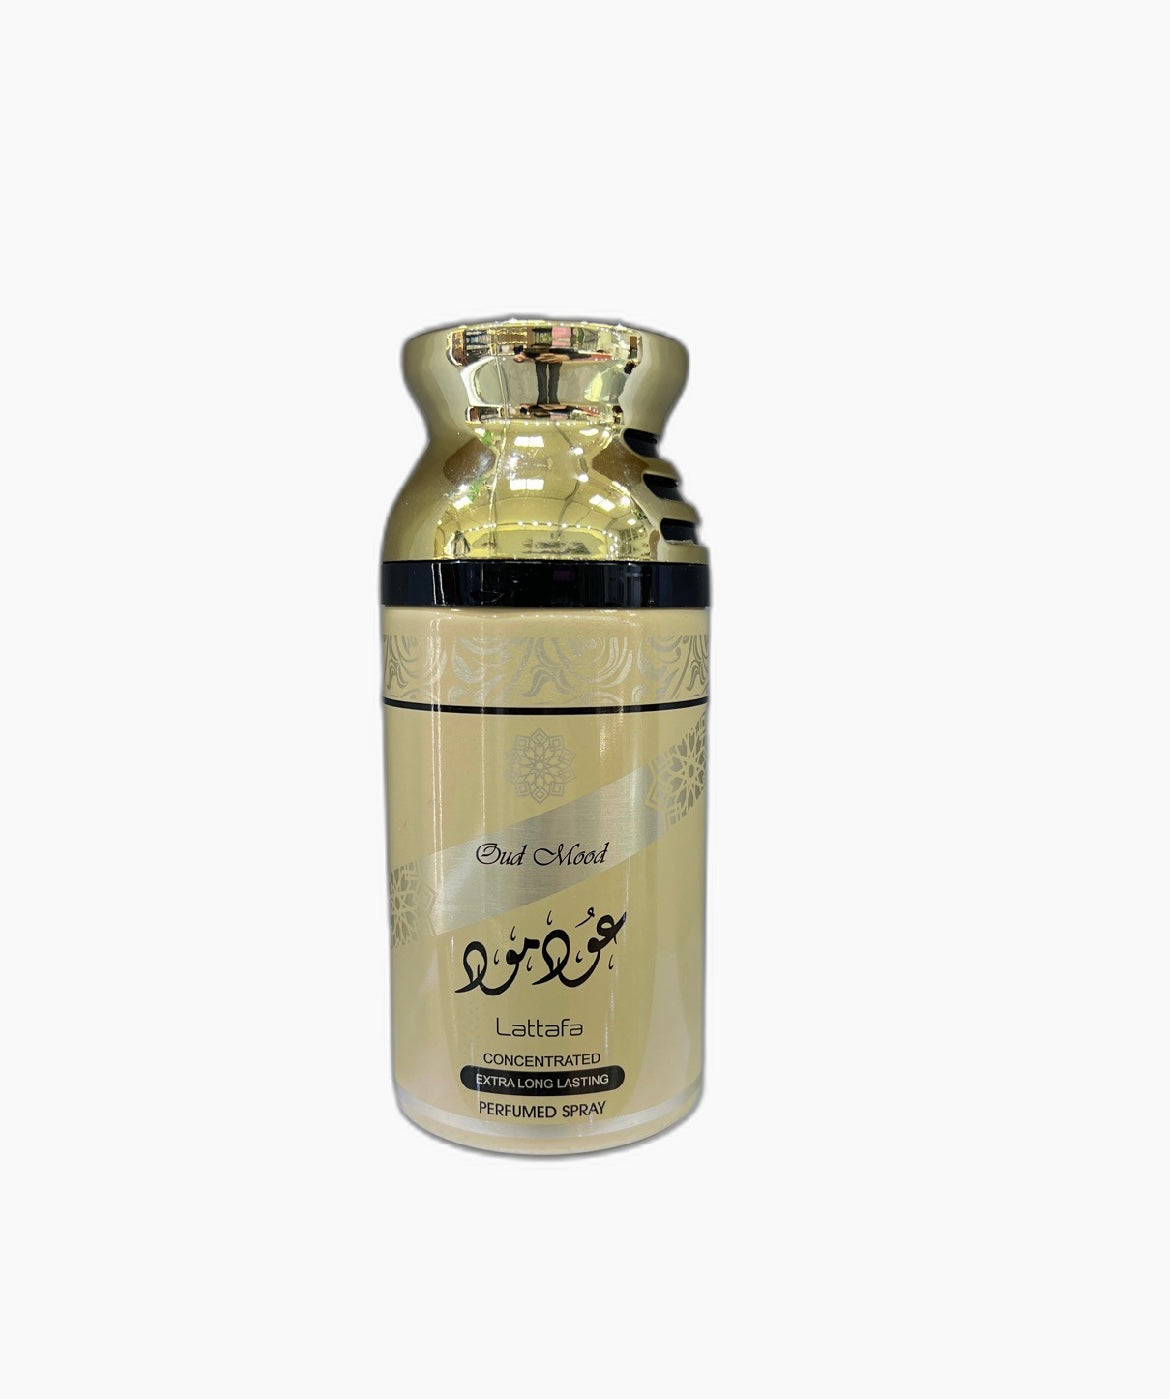 Lattafa Oud Mood Perfume Spray Deodorant 250ml